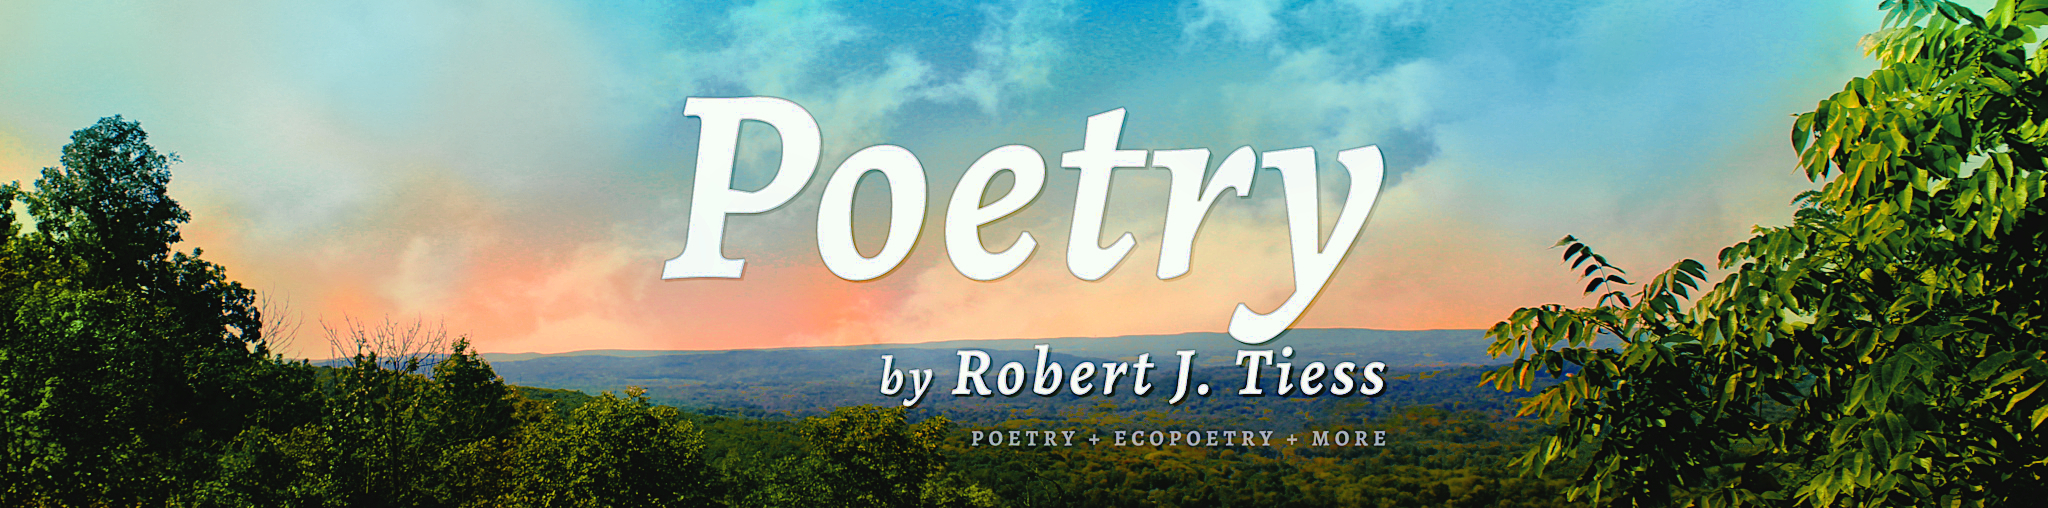 Poetry by Robert J. Tiess: Poems + Ecopoems + More